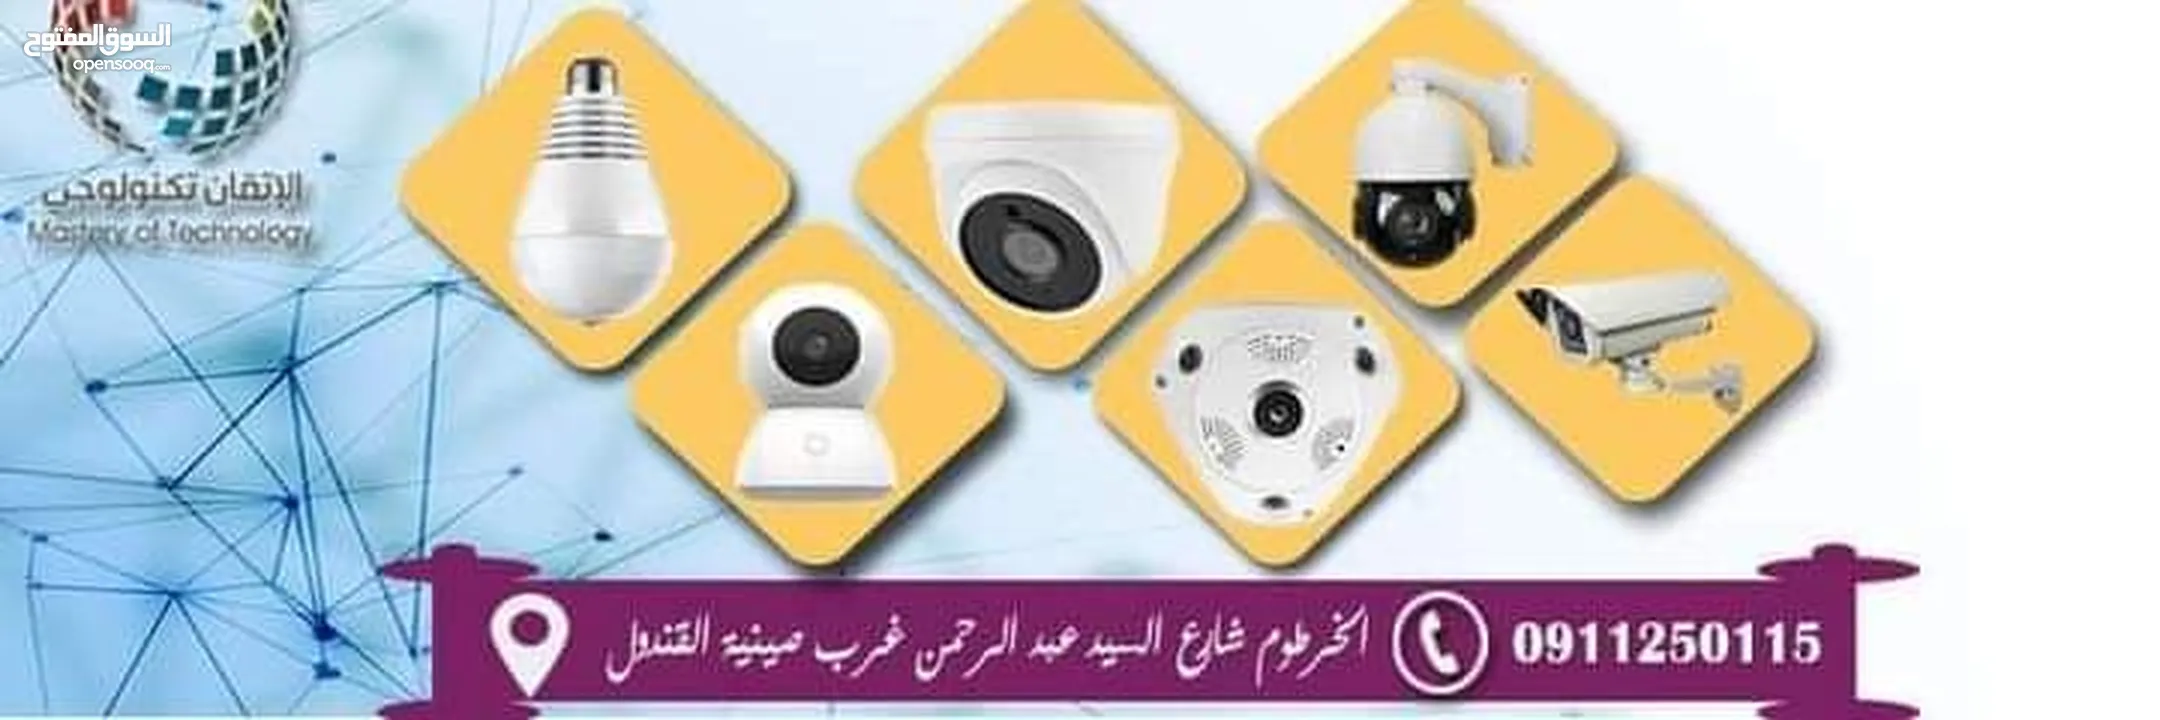 مفاجاء في عروض الأسعار لأنظمة كاميرات المراقبة